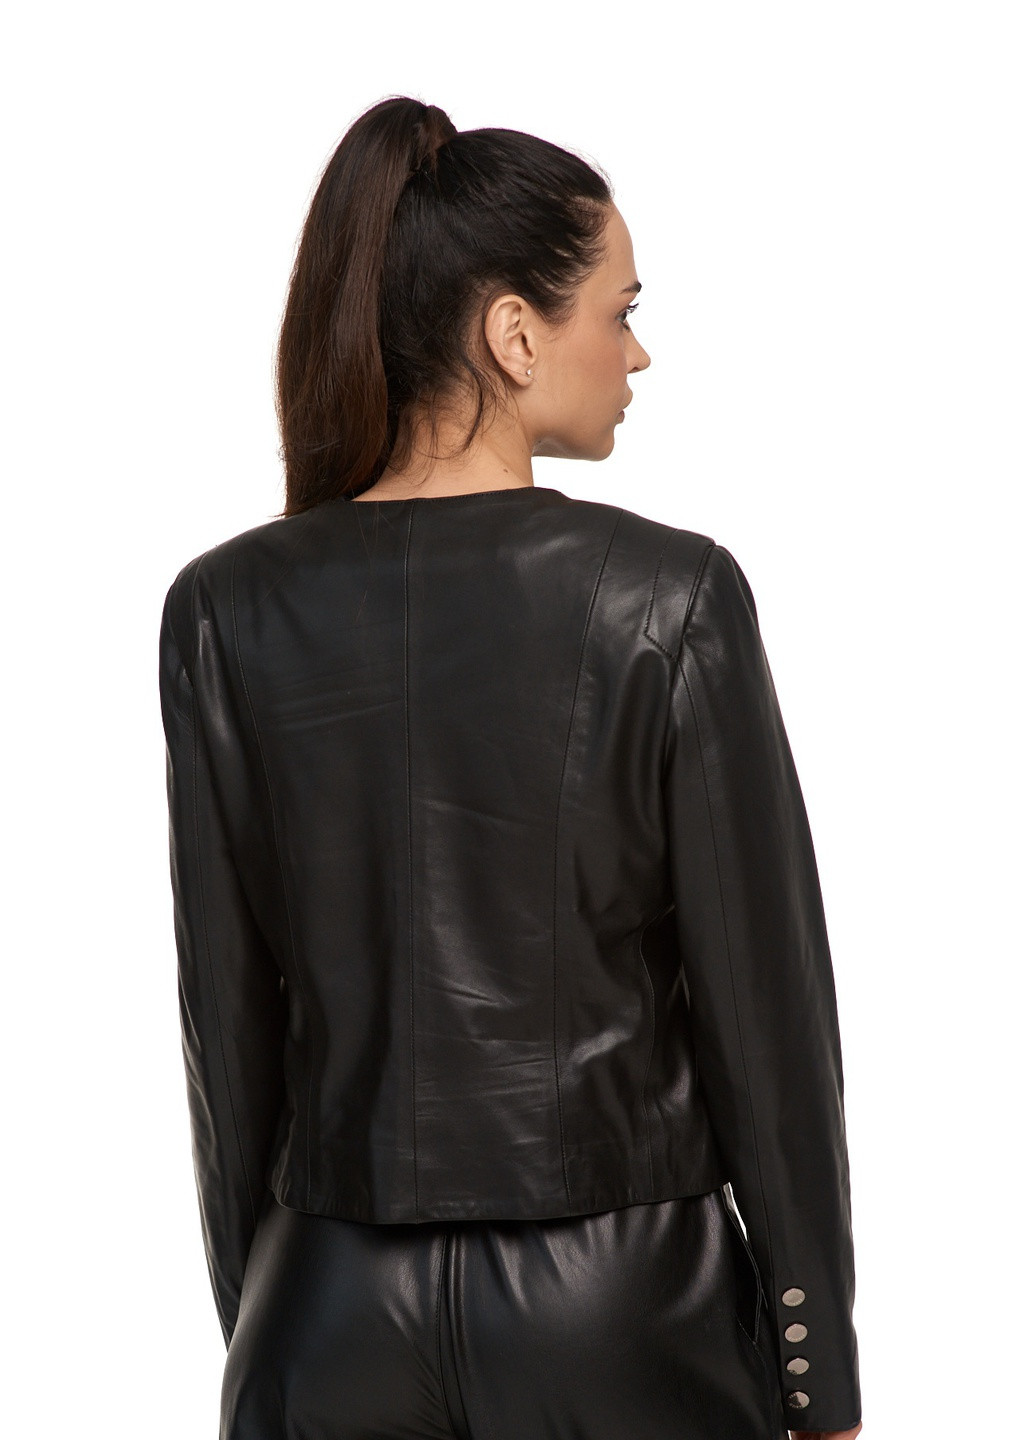 Чорна демісезонна жіноча шкіряна куртка класика комір «шанель» chanel натуральна шкіра. весна осінь демісезон fer-1413 чорна Actors